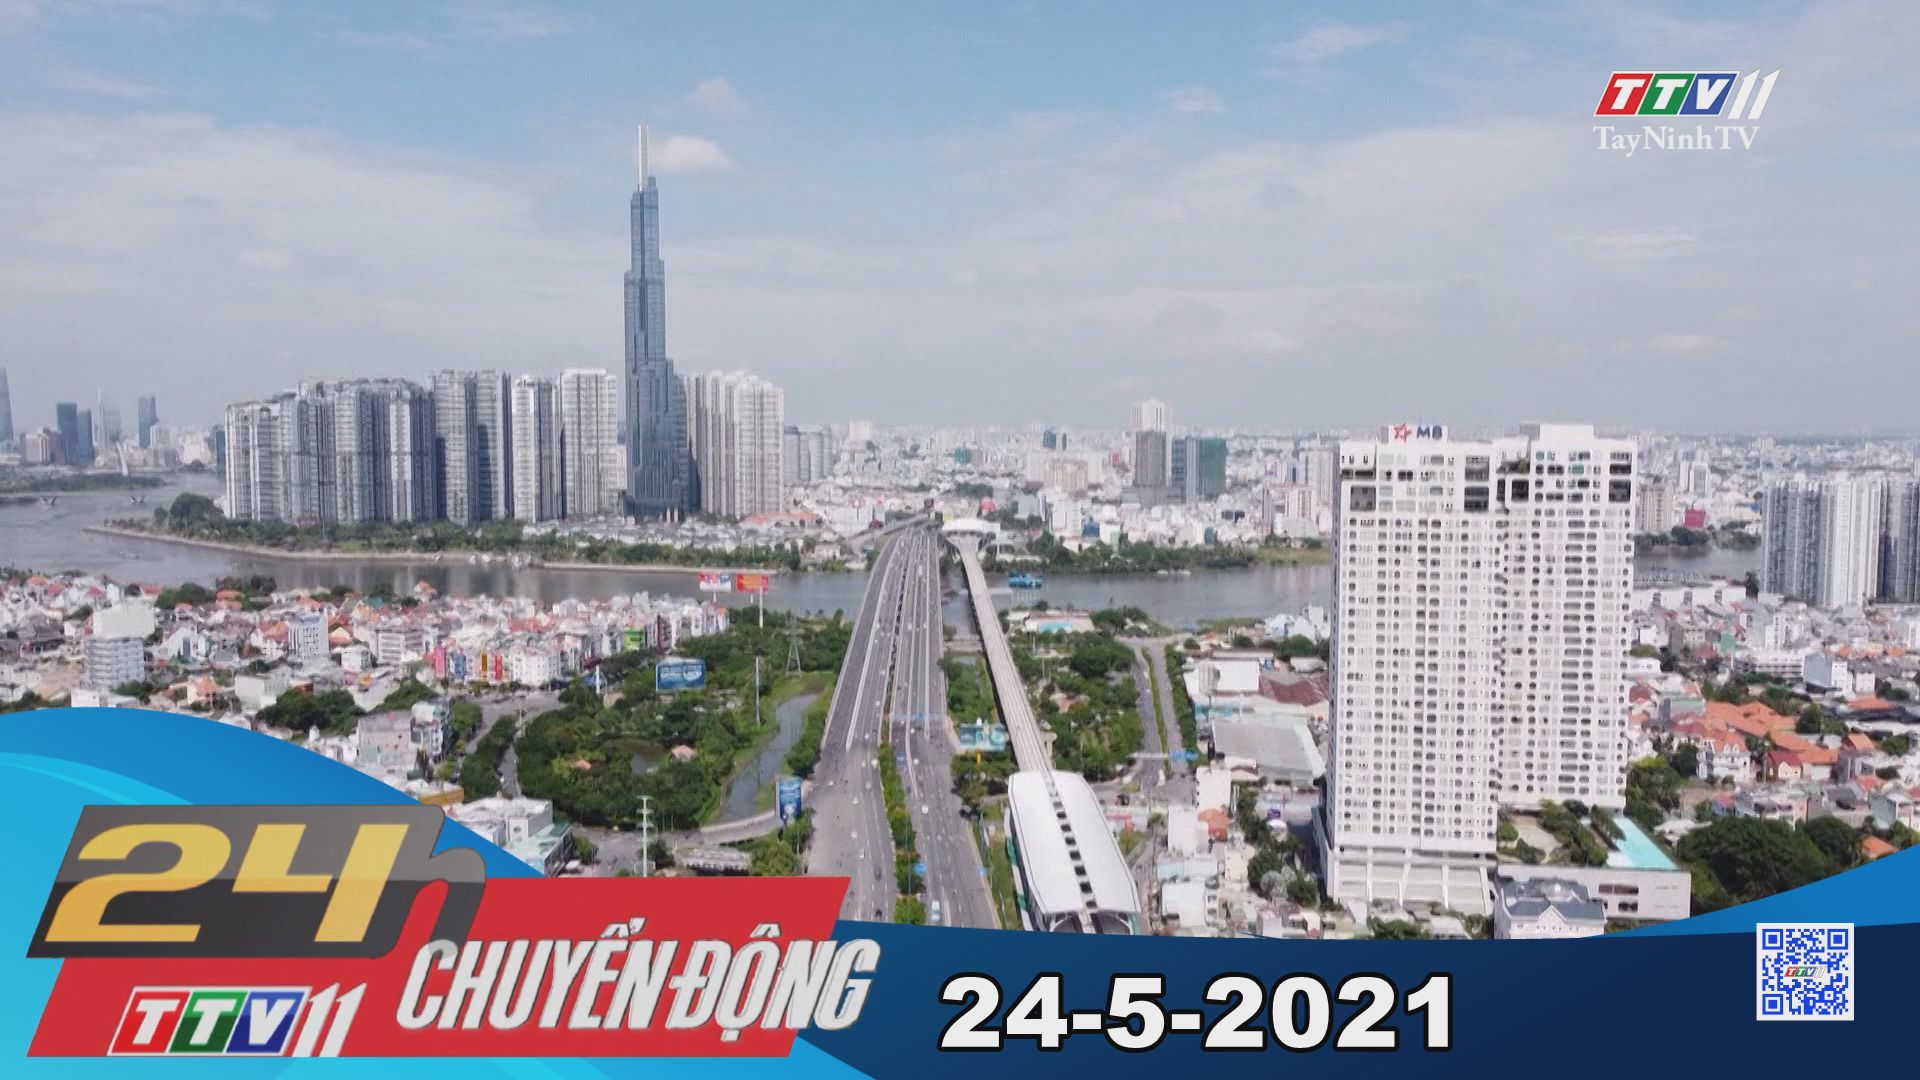 24h Chuyển động 24-5-2021 | Tin tức hôm nay | TayNinhTV